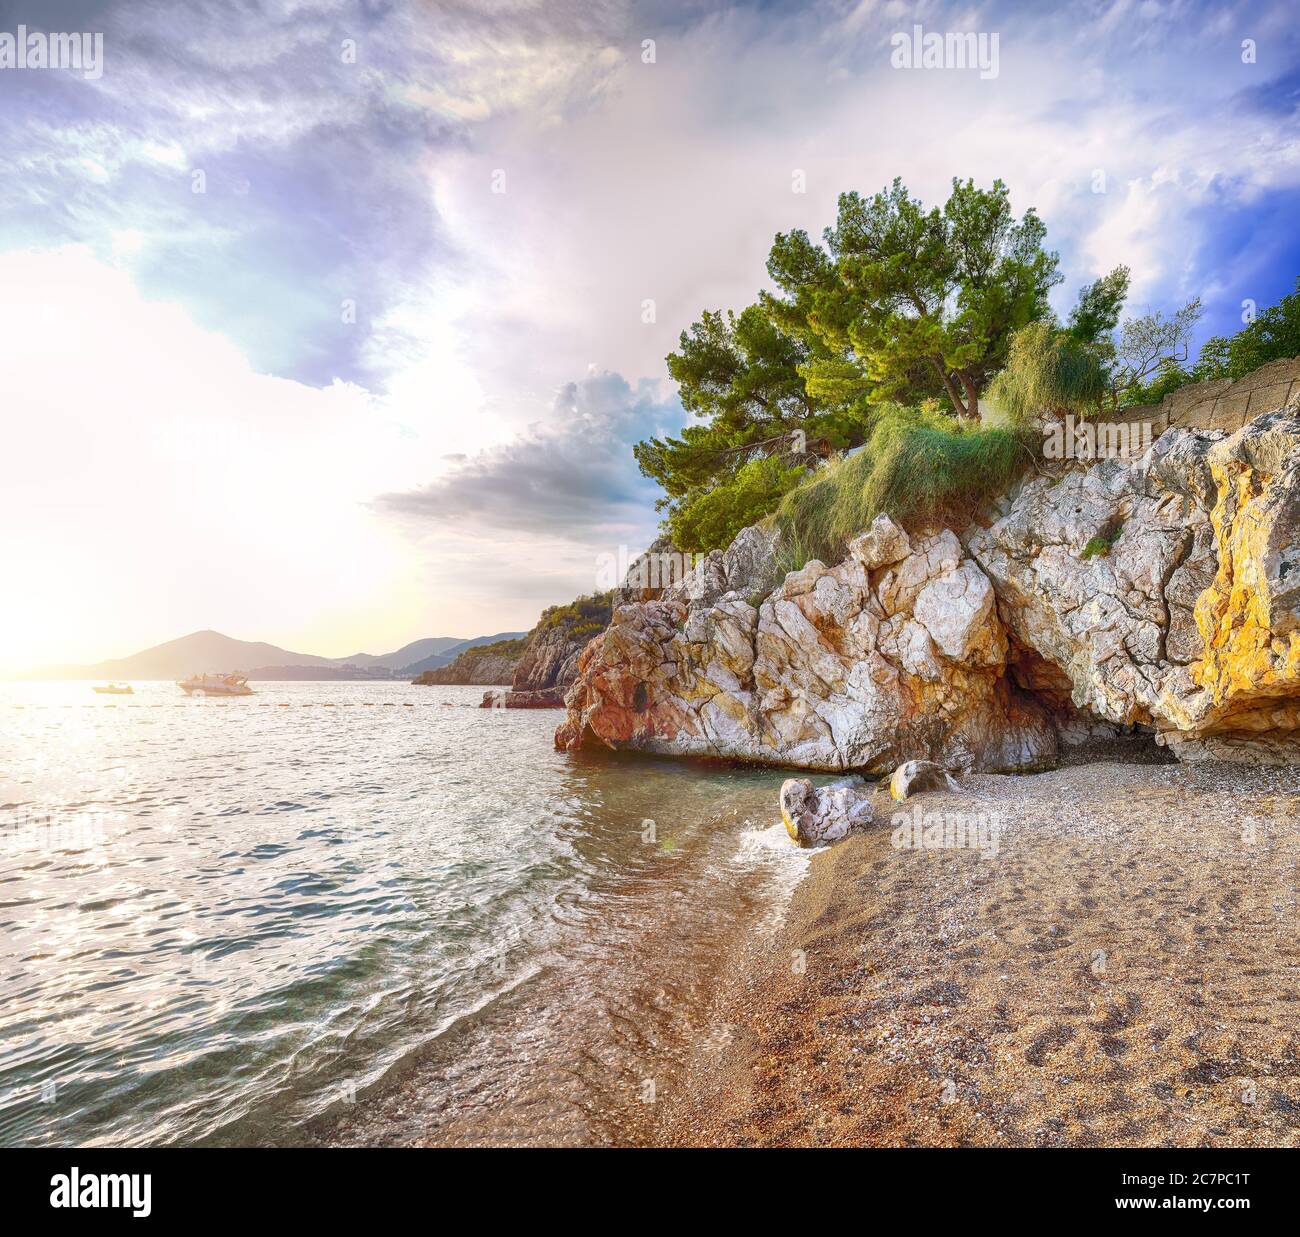 Picturesque summer view of Adriatic sea coast in Budva Riviera near Przno village. Location: Przno village, Montenegro, Balkans, Europe Stock Photo